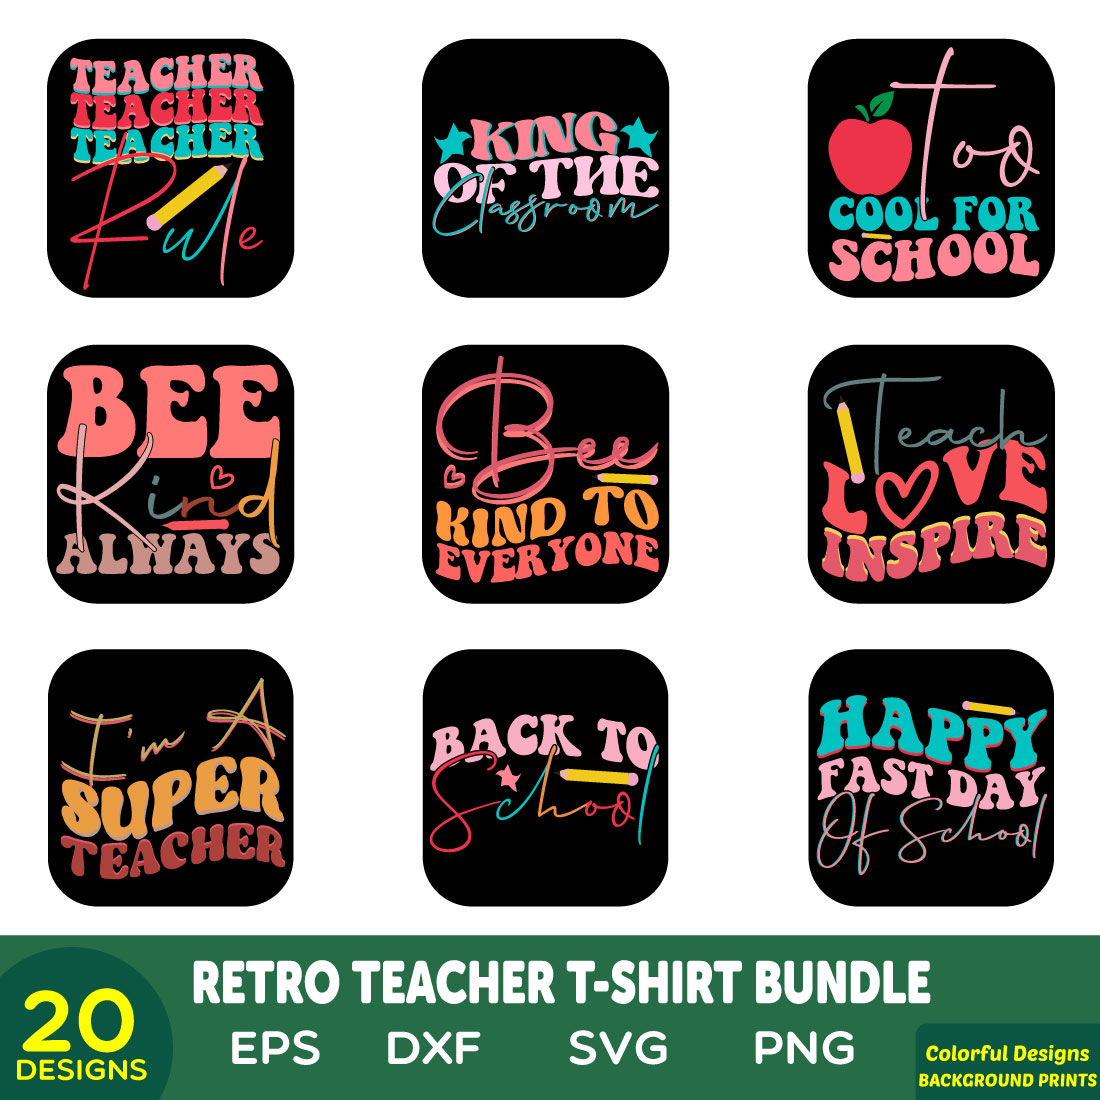 retro teacher t-shirt bundle preview image.